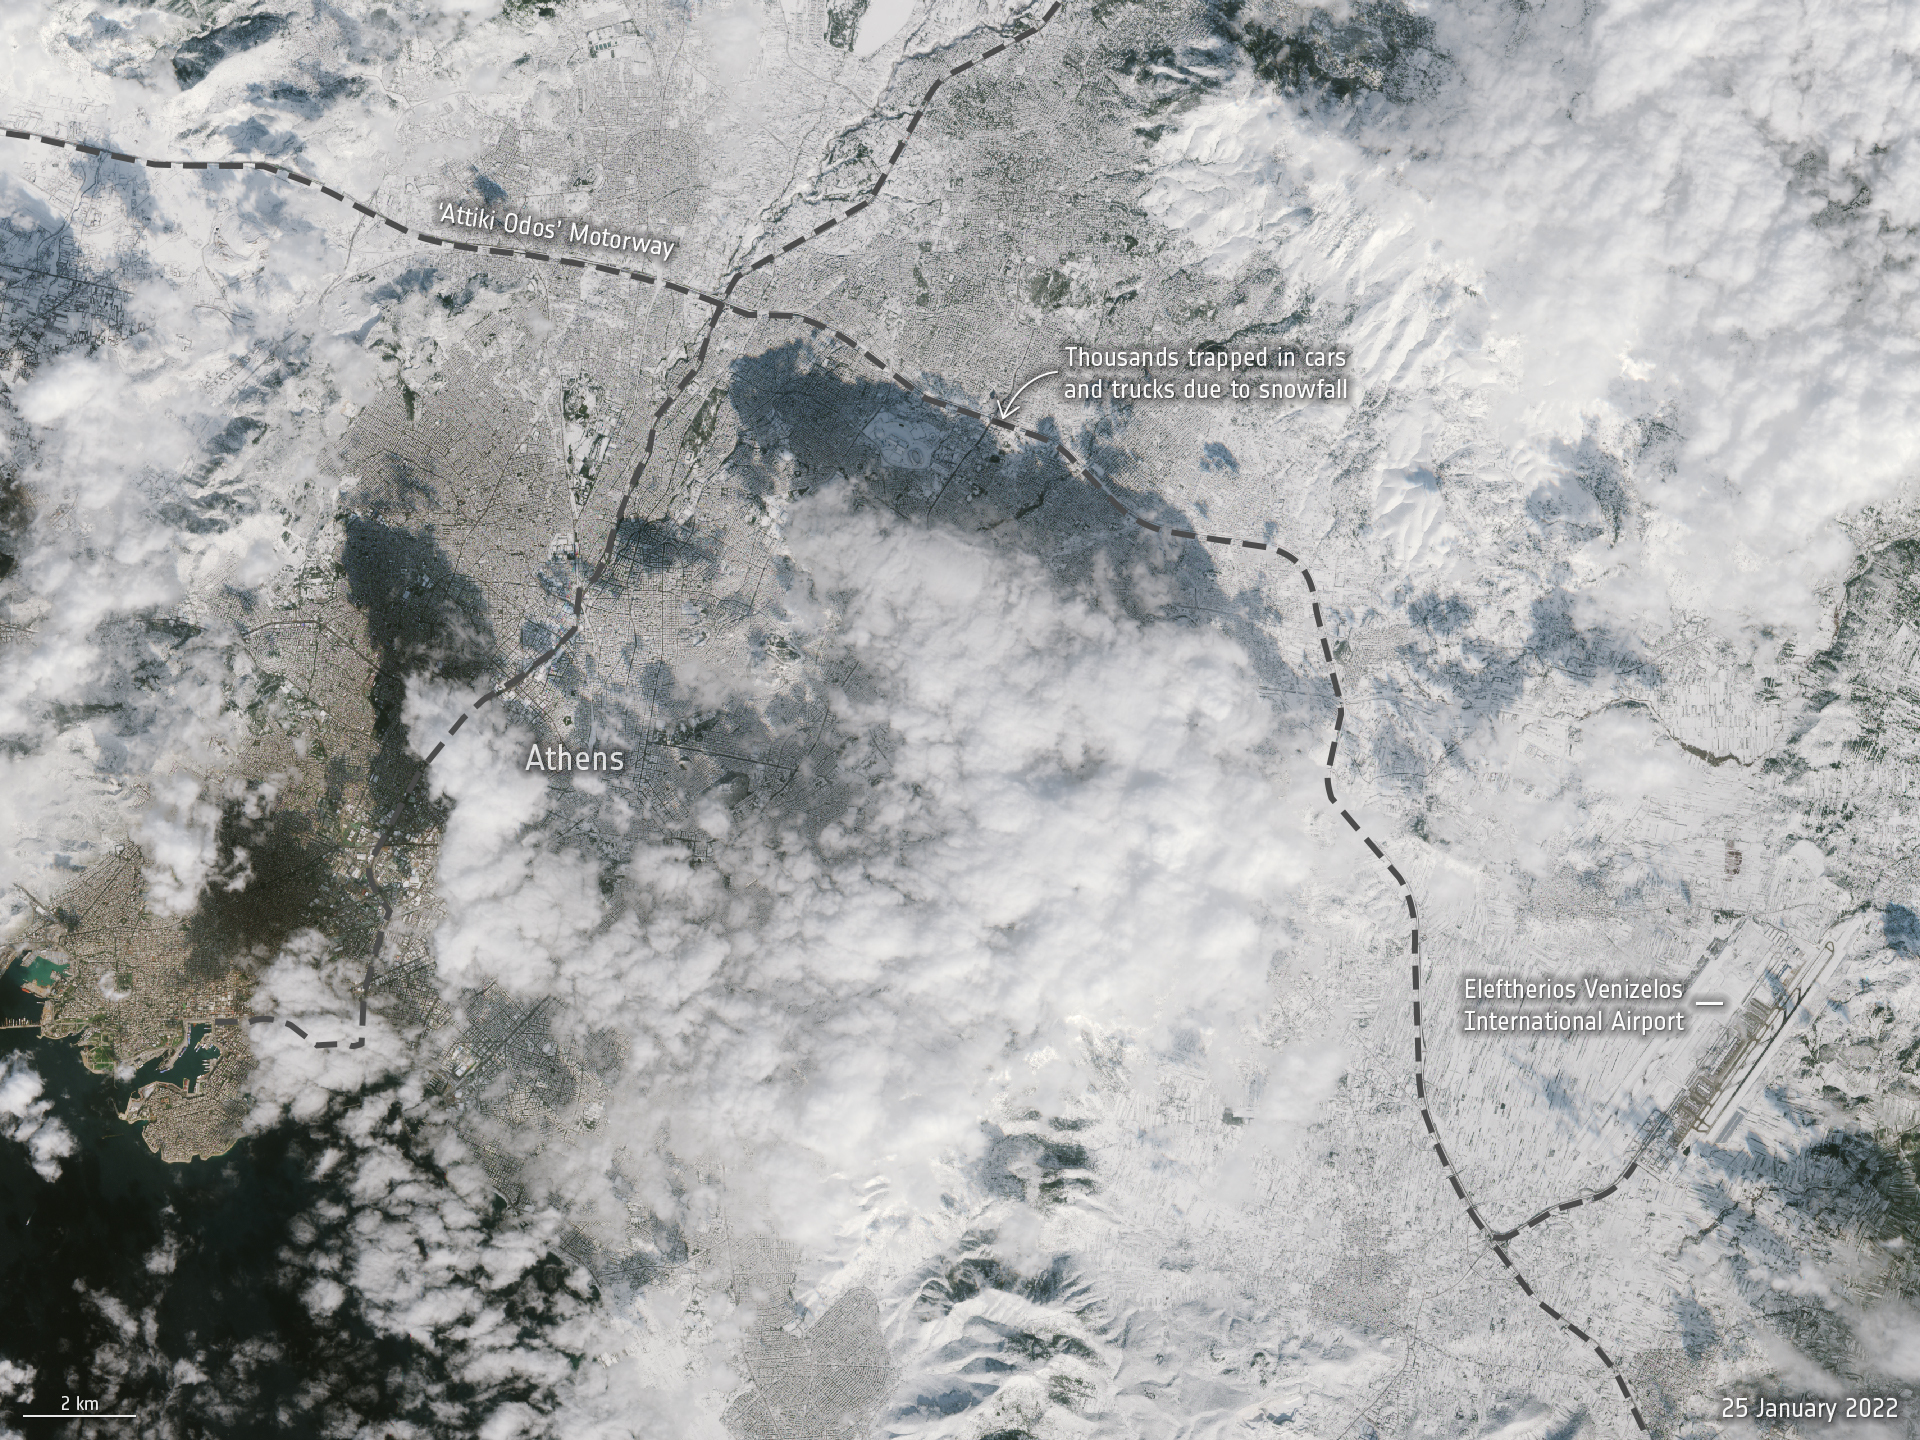 Φωτογραφία της χιονισμένης Αθήνας από το διάστημα – Τι κατέγραψε ο ευρωπαϊκός δορυφόρος Copernicus Sentinel-2